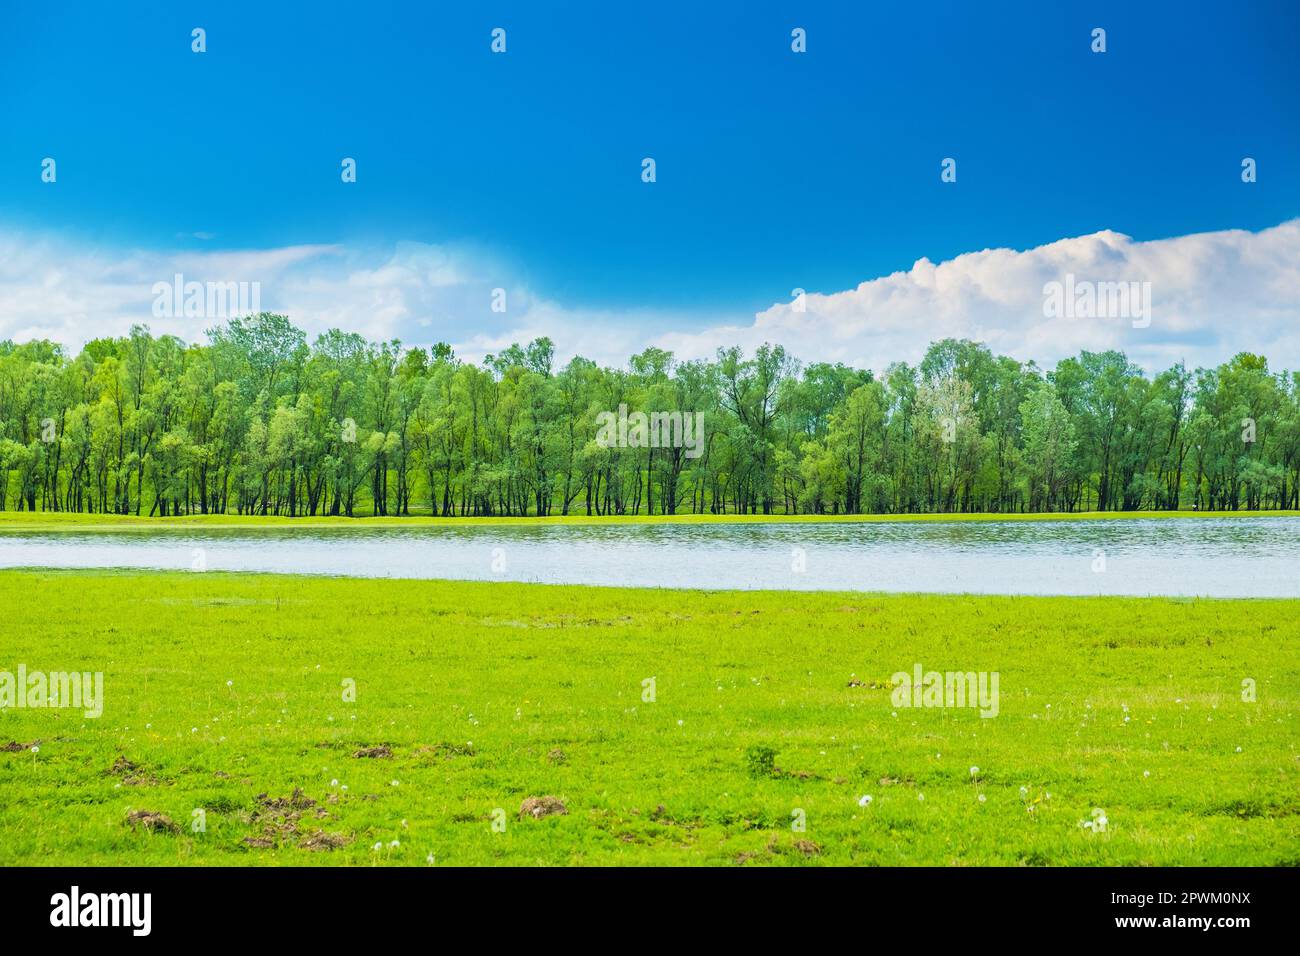 Beau paysage en coutryside, distributeur de la rivière Sava dans le parc naturel Lonjsko polje, Croatie Banque D'Images